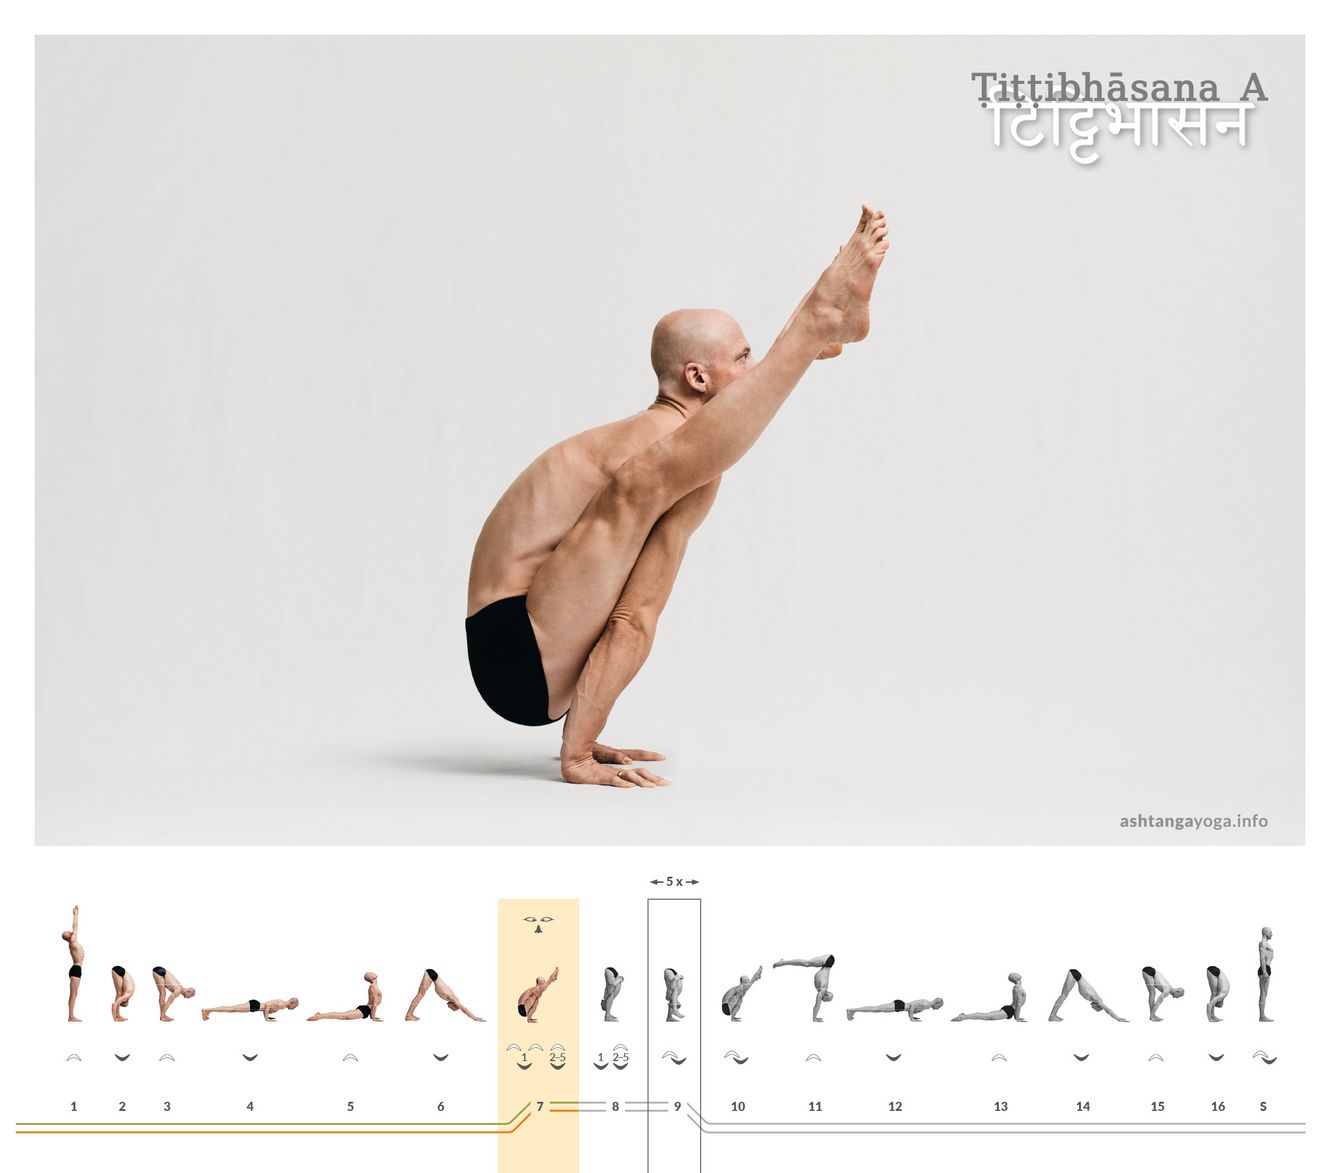 In der ersten Version des “Kiebitz” balanciert der*die Übende auf den Händen. Die Beine sind links und rechts an den Schulterblättern abgestützt und wachsen nach vorne oben - Tittibhasana.